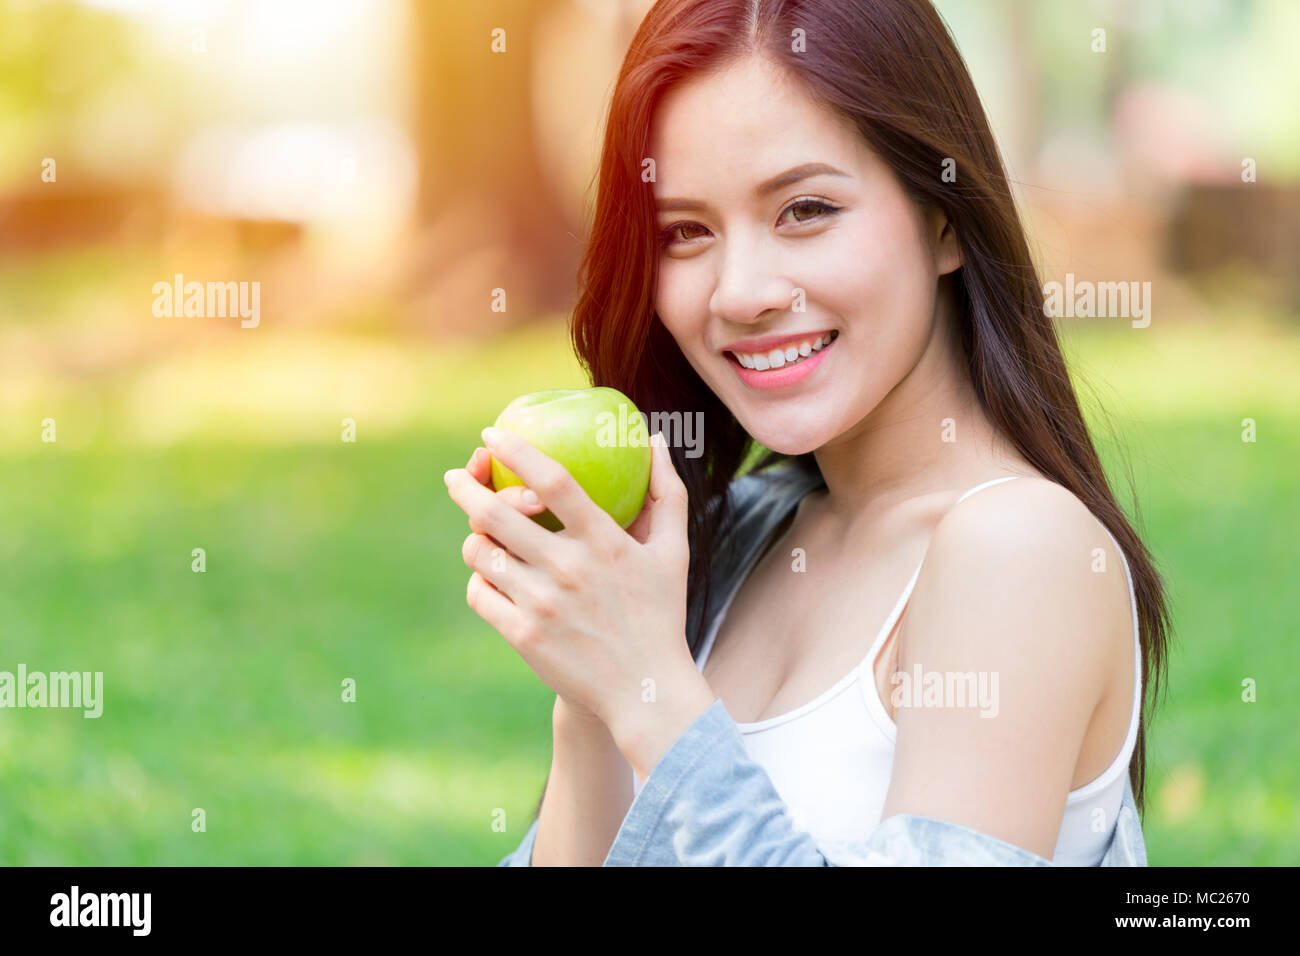 Schöne asiatische Frauen Modell Hand halten Green Apple im Park im Freien gesunde Ernährung Bio-lebensmittel Früchte Diät Konzept Stockfoto